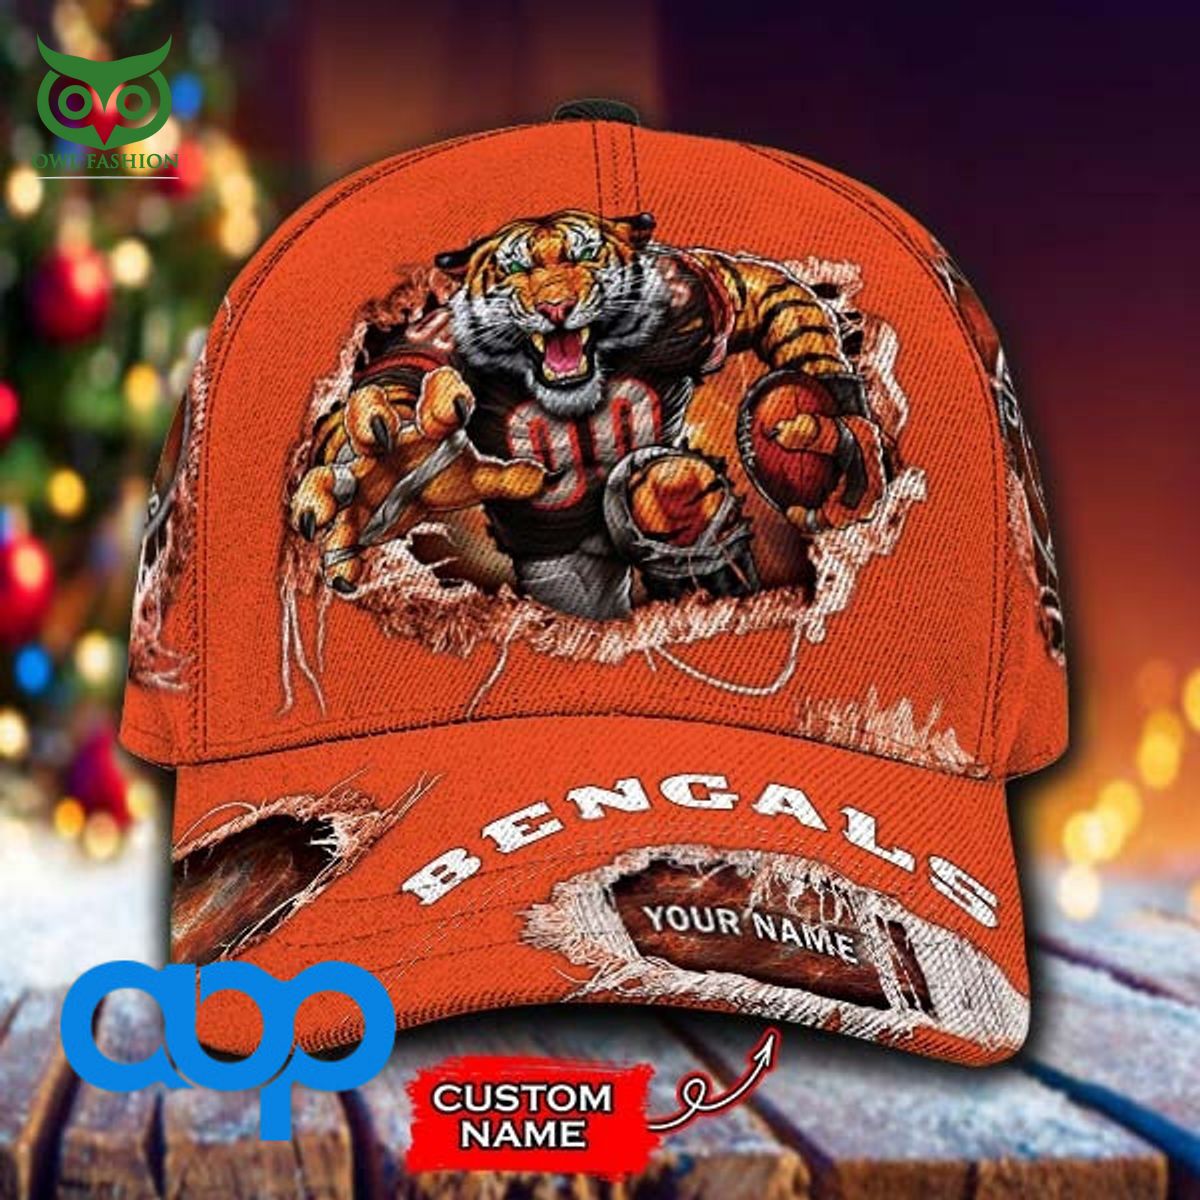 NFL Cincinnati Bengals Special Design 3D Cap - Banantees